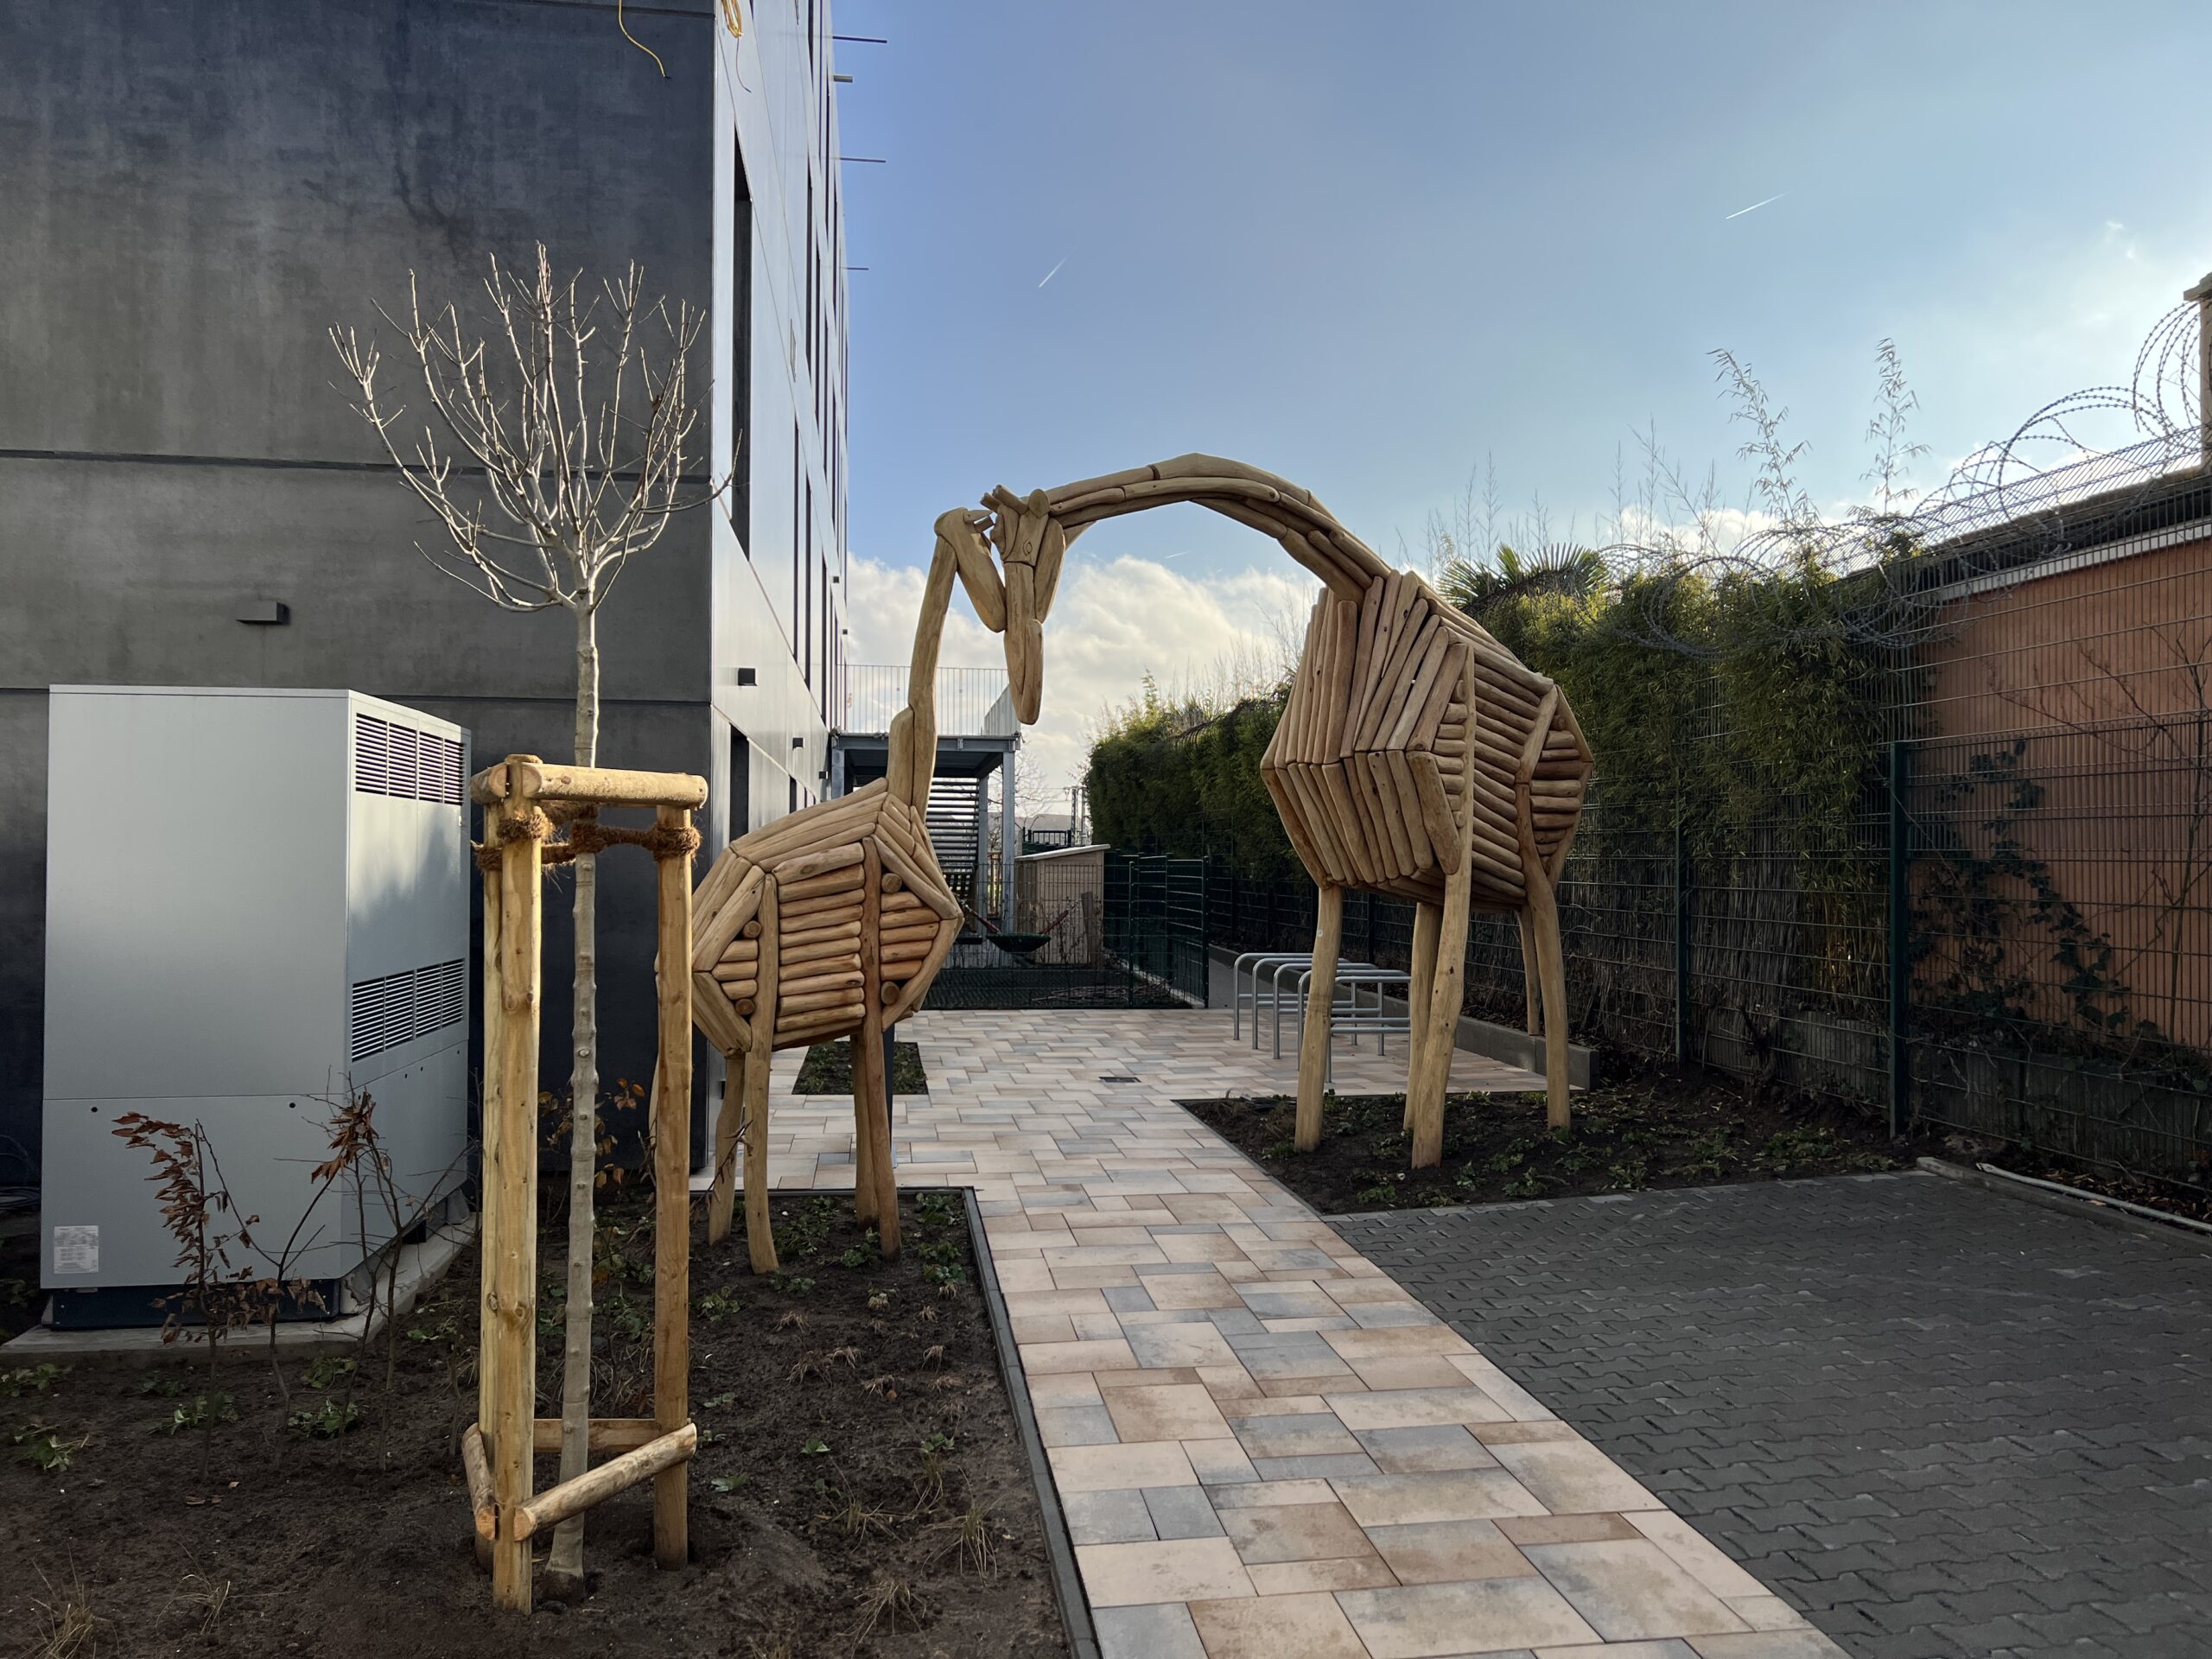 Die Kita Giraffenland hat ihr Eingangsportal erhalten – Tolle Kunst und ein einladender Eingang für die Kids! Gelungene Idee und Präsentation des Bauherren!